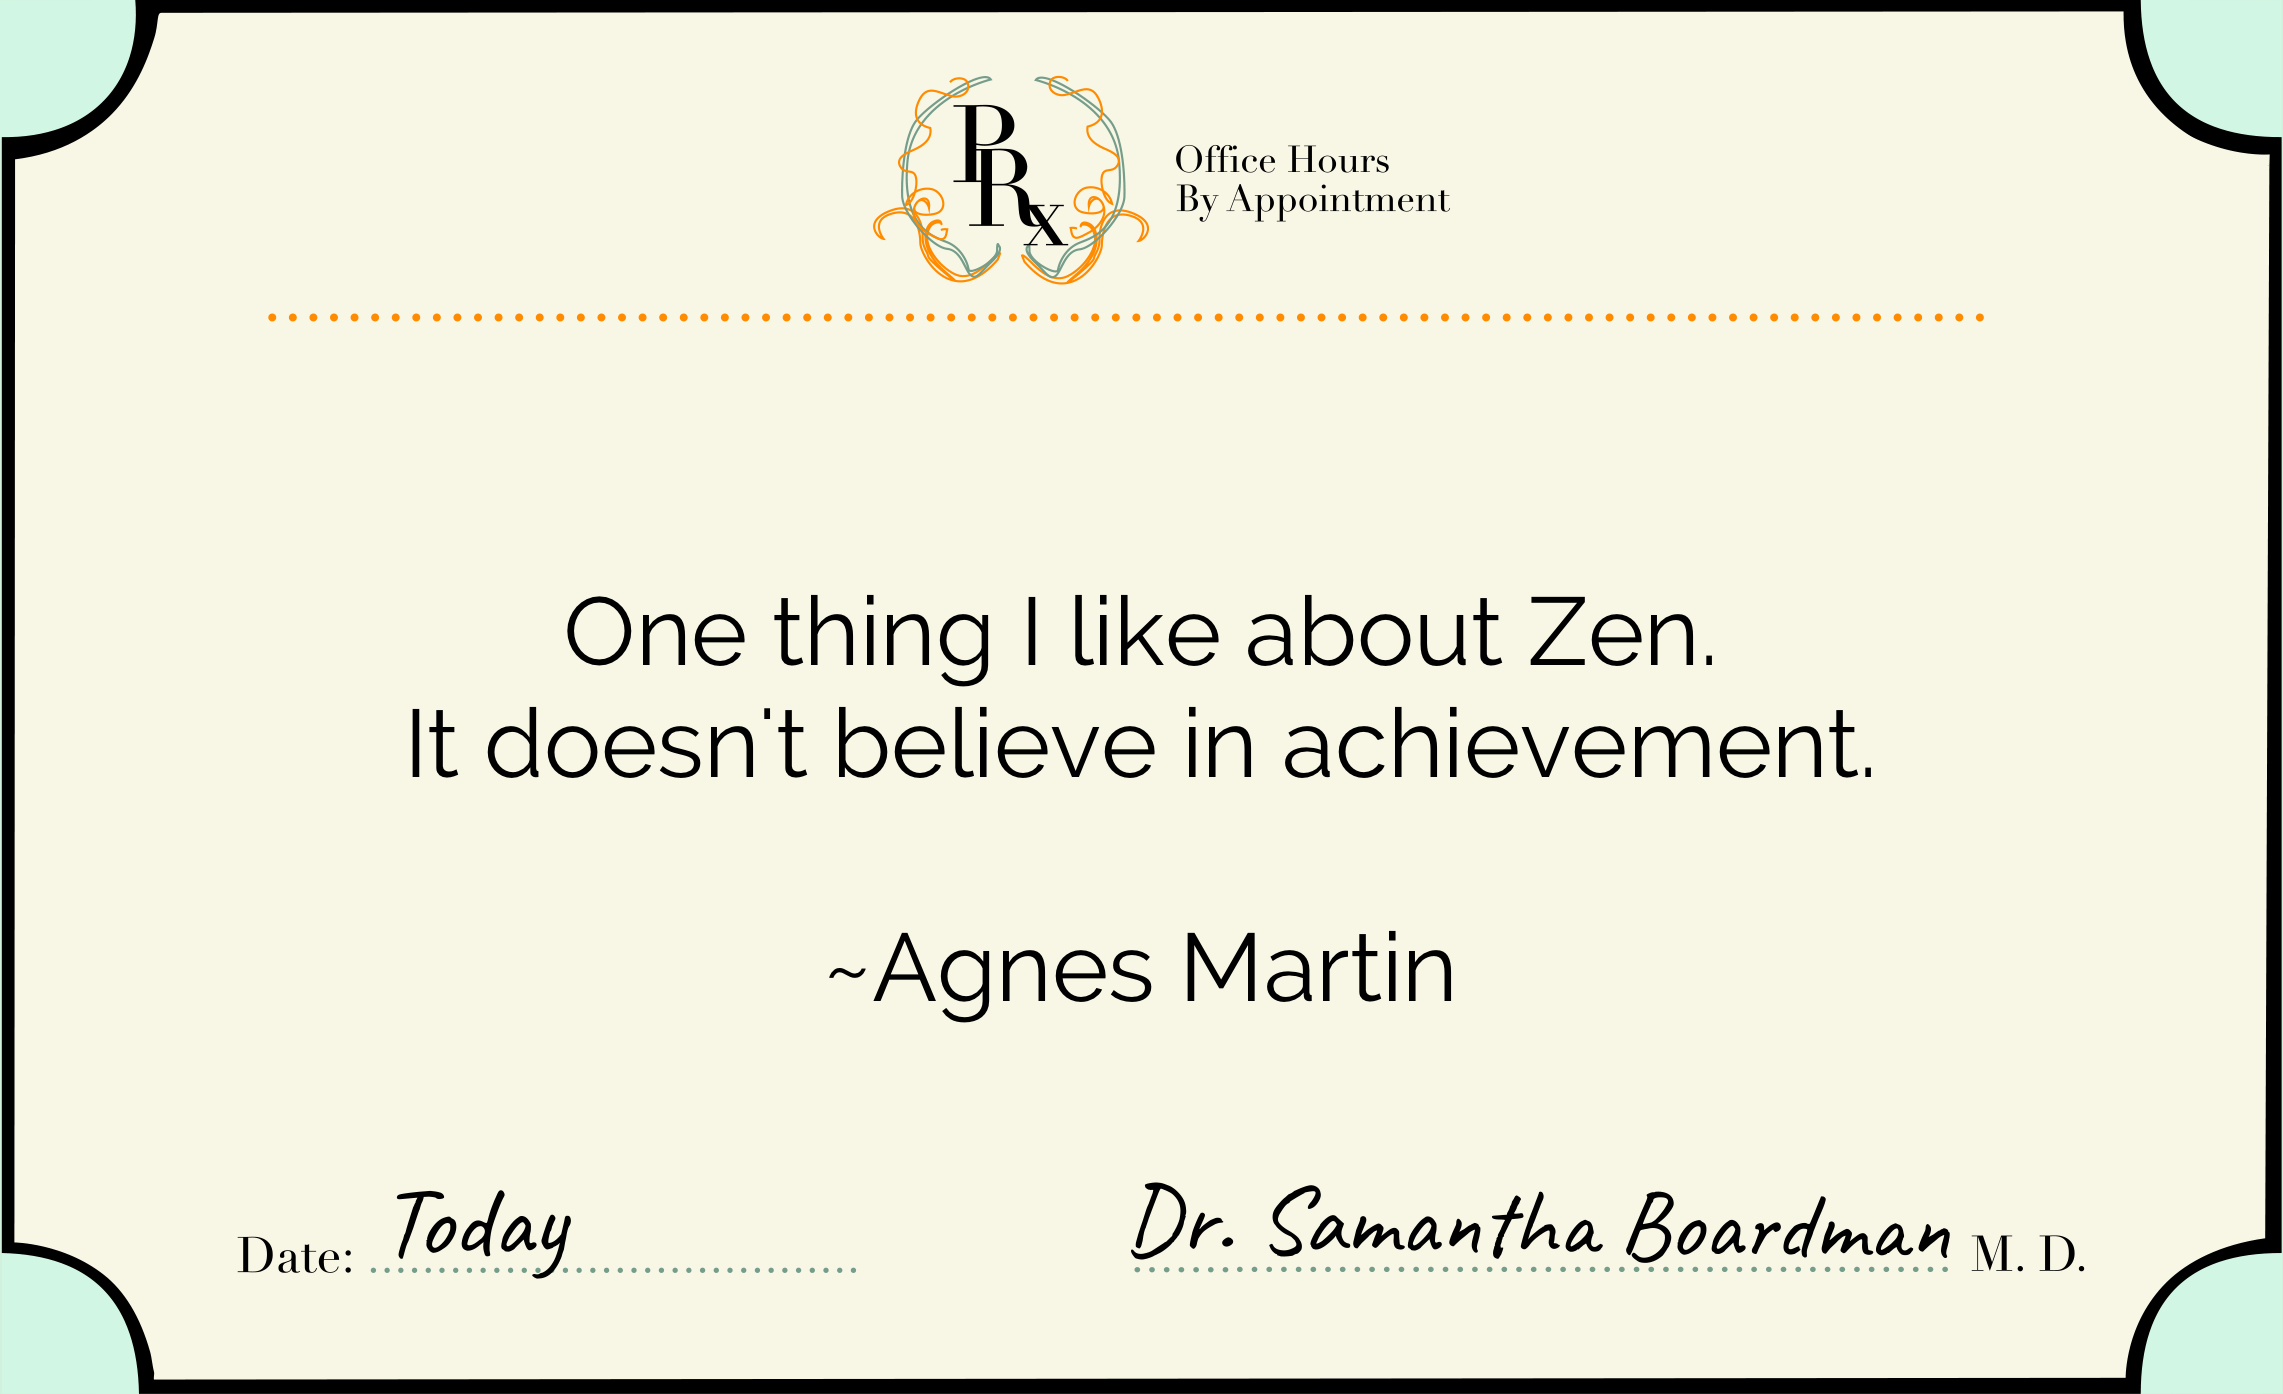 Agnes Martin on Zen